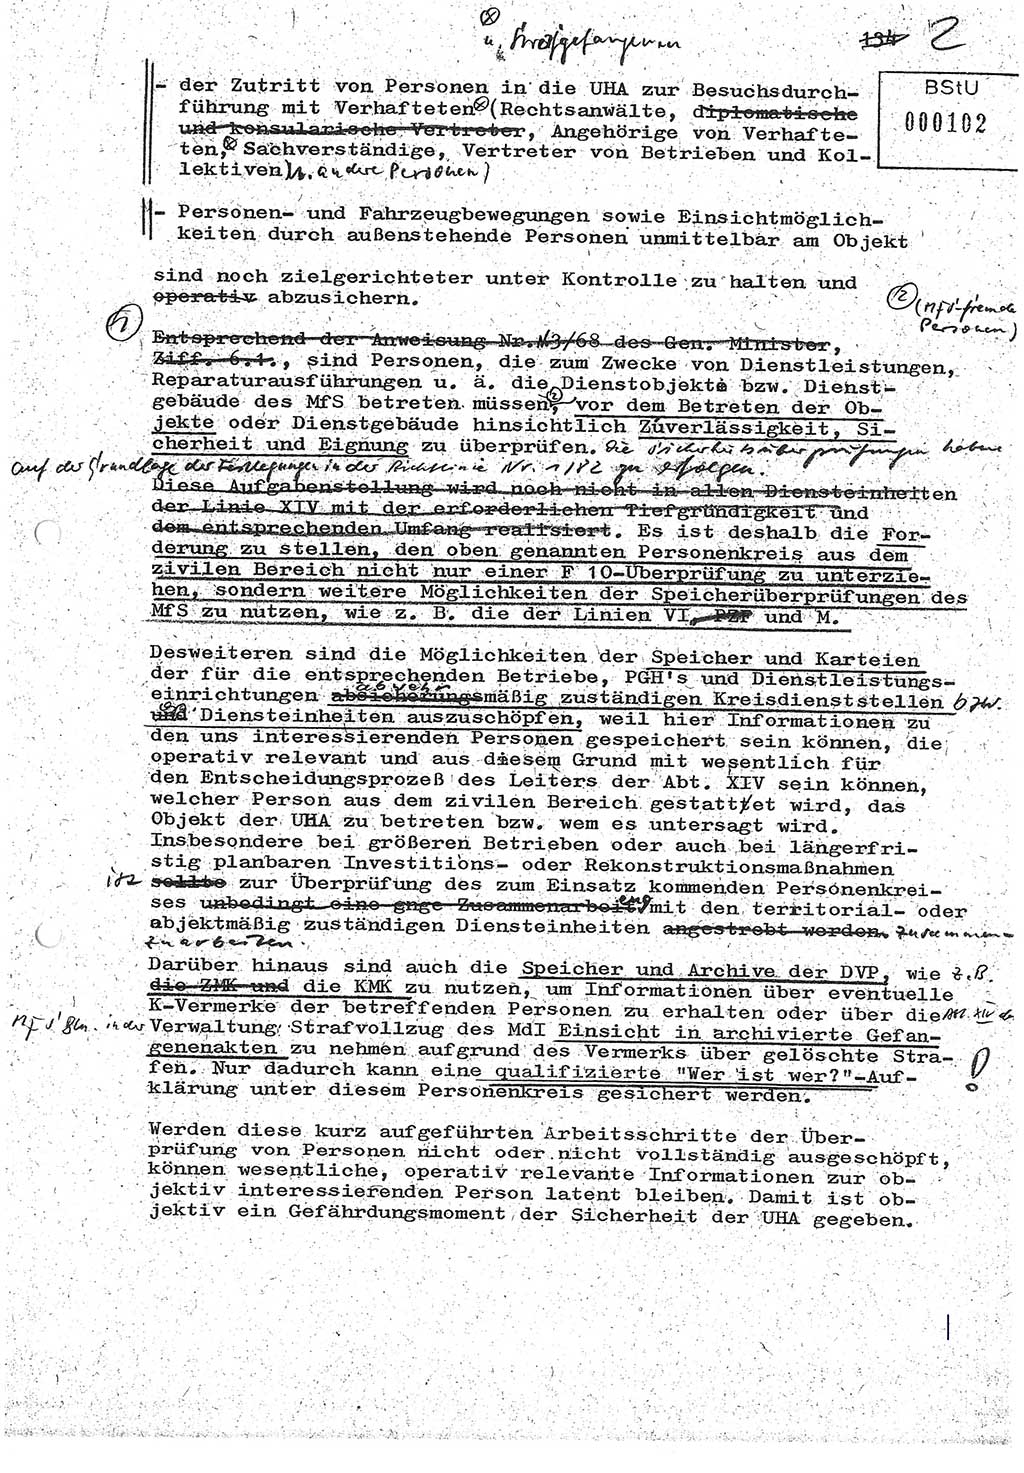 Diplomarbeit (Entwurf) Oberleutnant Peter Parke (Abt. ⅩⅣ), Ministerium für Staatssicherheit (MfS) [Deutsche Demokratische Republik (DDR)], Juristische Hochschule (JHS), Geheime Verschlußsache (GVS) o001-98/86, Potsdam 1986, Seite 102 (Dipl.-Arb. MfS DDR JHS GVS o001-98/86 1986, S. 102)